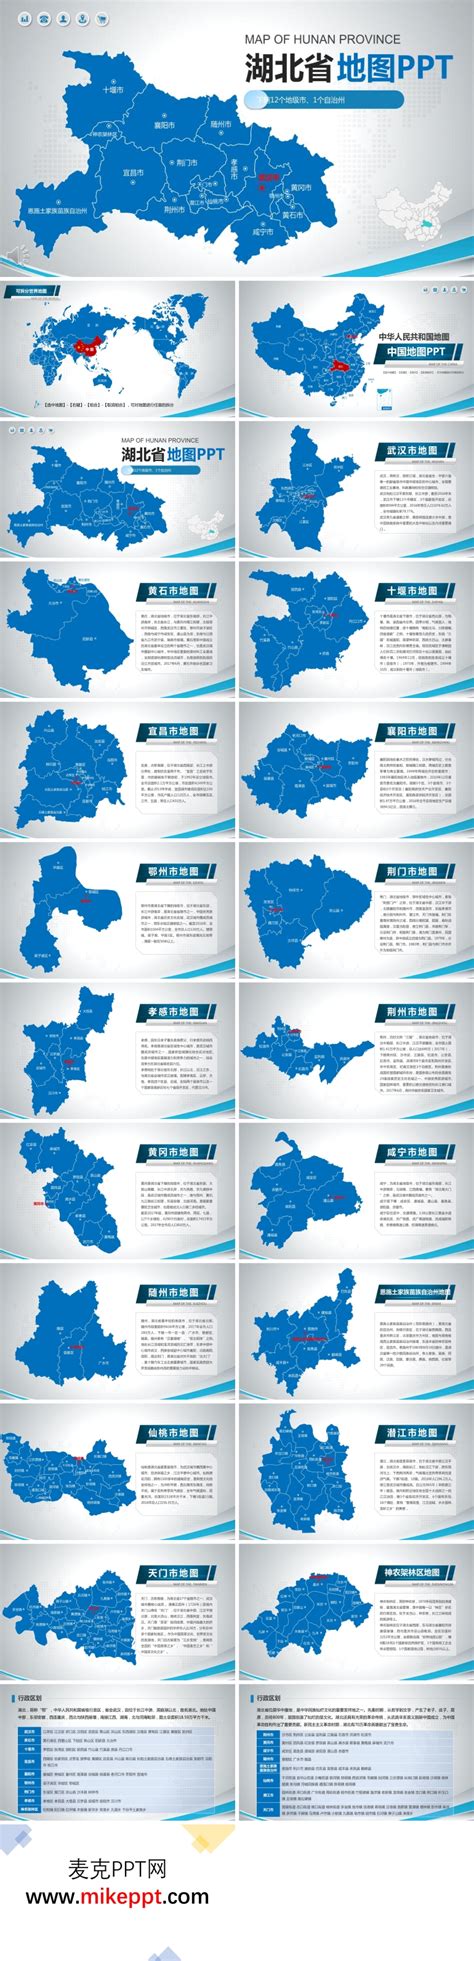 湖北省地图PPT模板-麦克PPT网